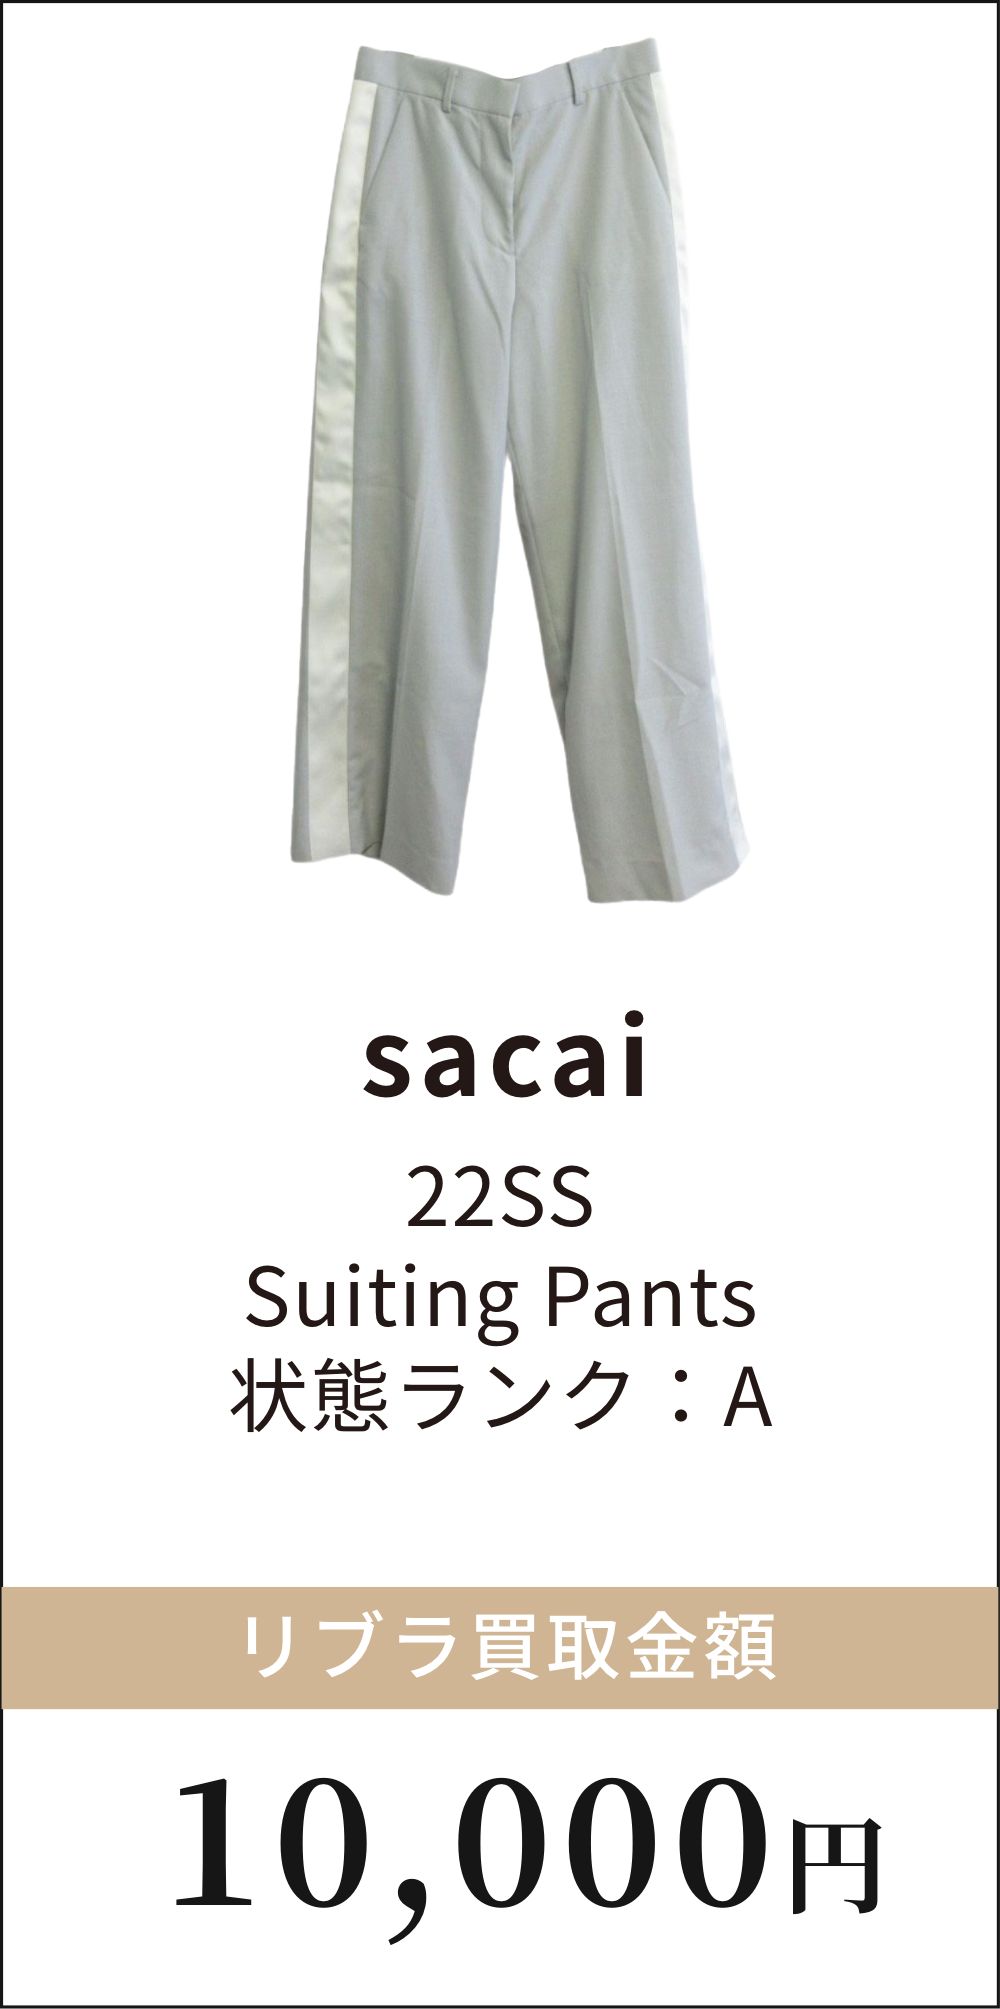 sacai 22SS Suitng Pants